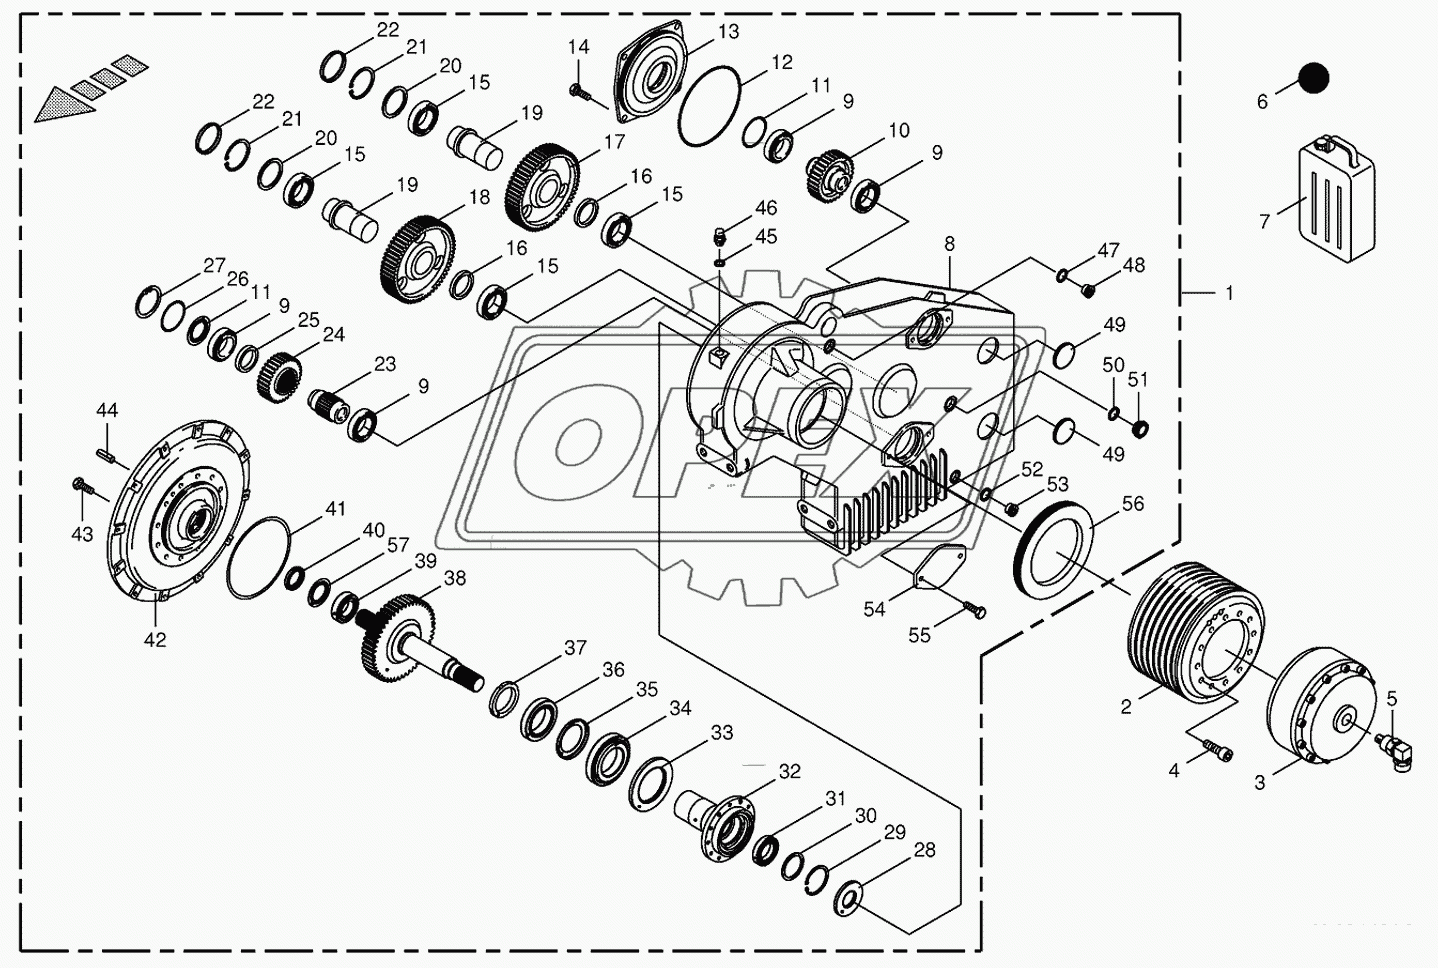 Motor output gear